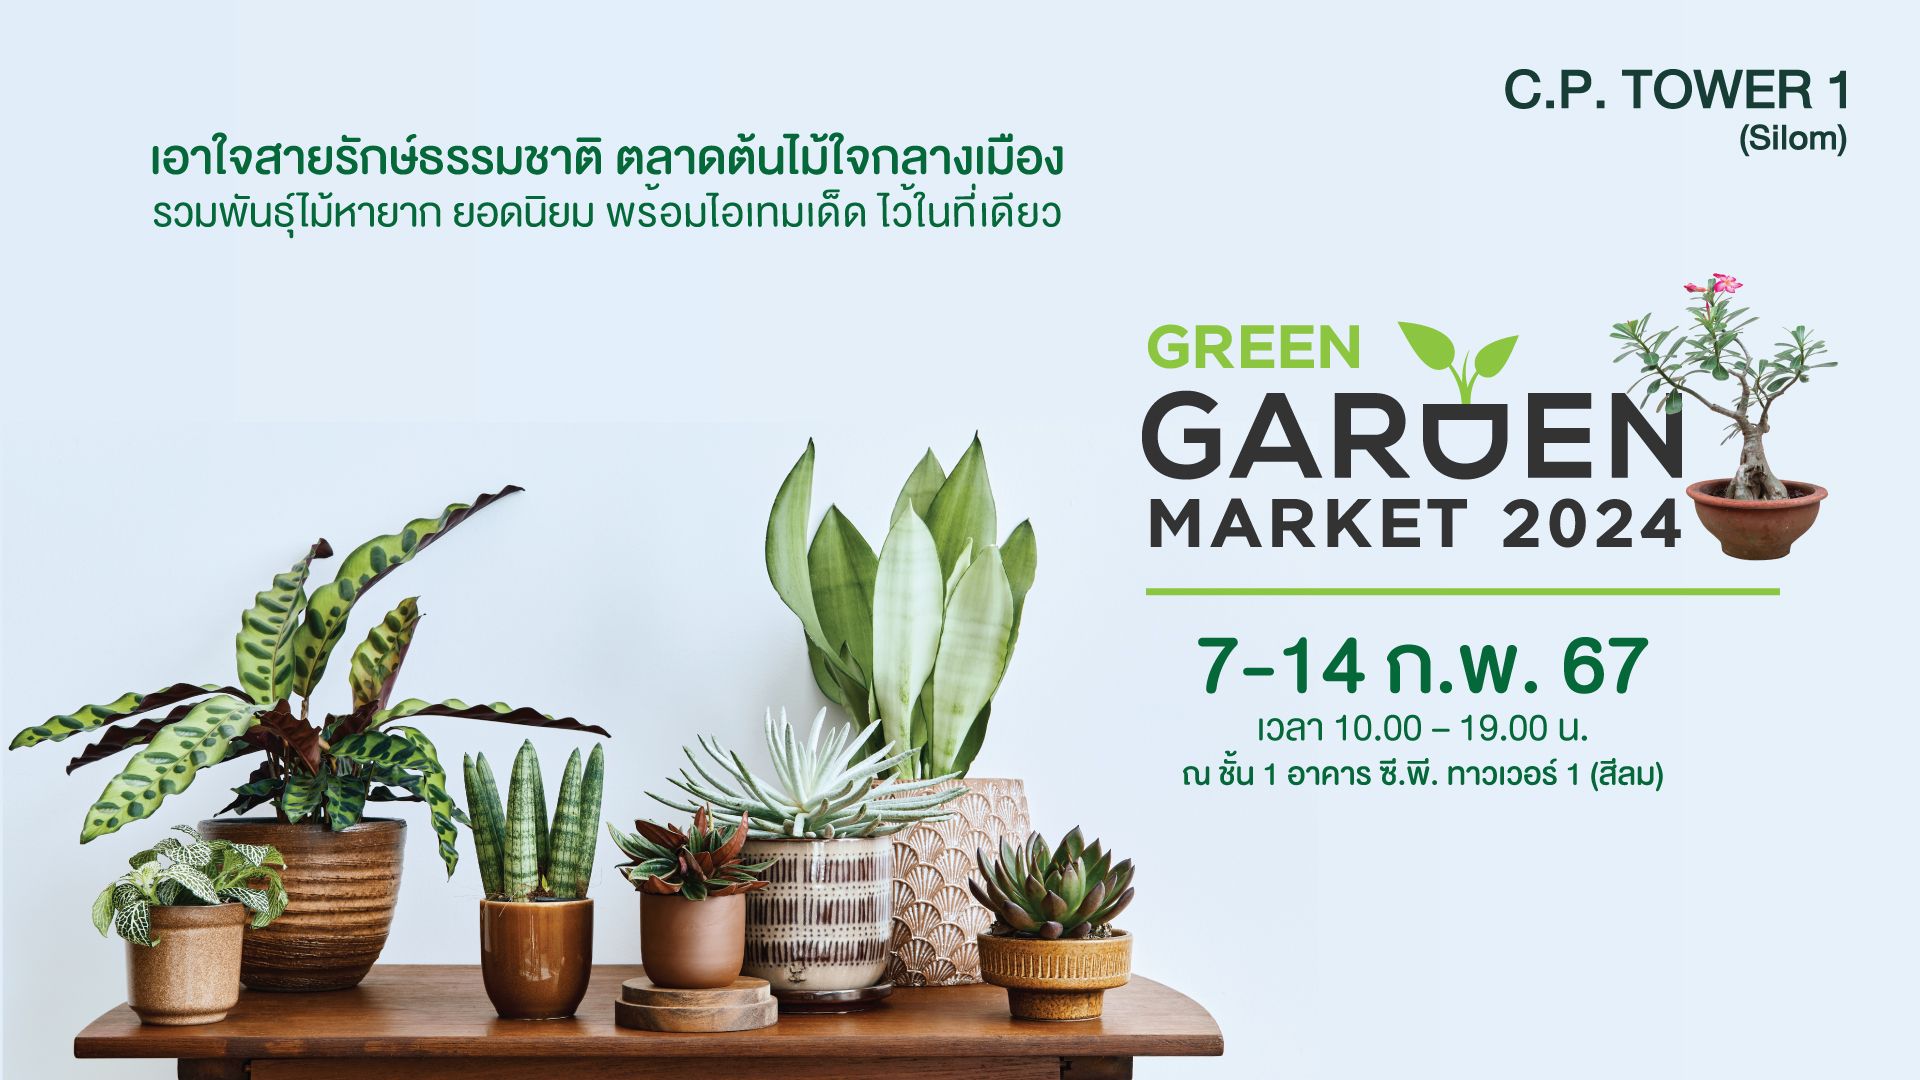 อาคาร ซี.พี. ทาวเวอร์ 1 (สีลม) จัดกิจกรรมตลาดต้นไม้ใจกลางเมือง ภายใต้ชื่องาน “Green Garden Market  2024” 